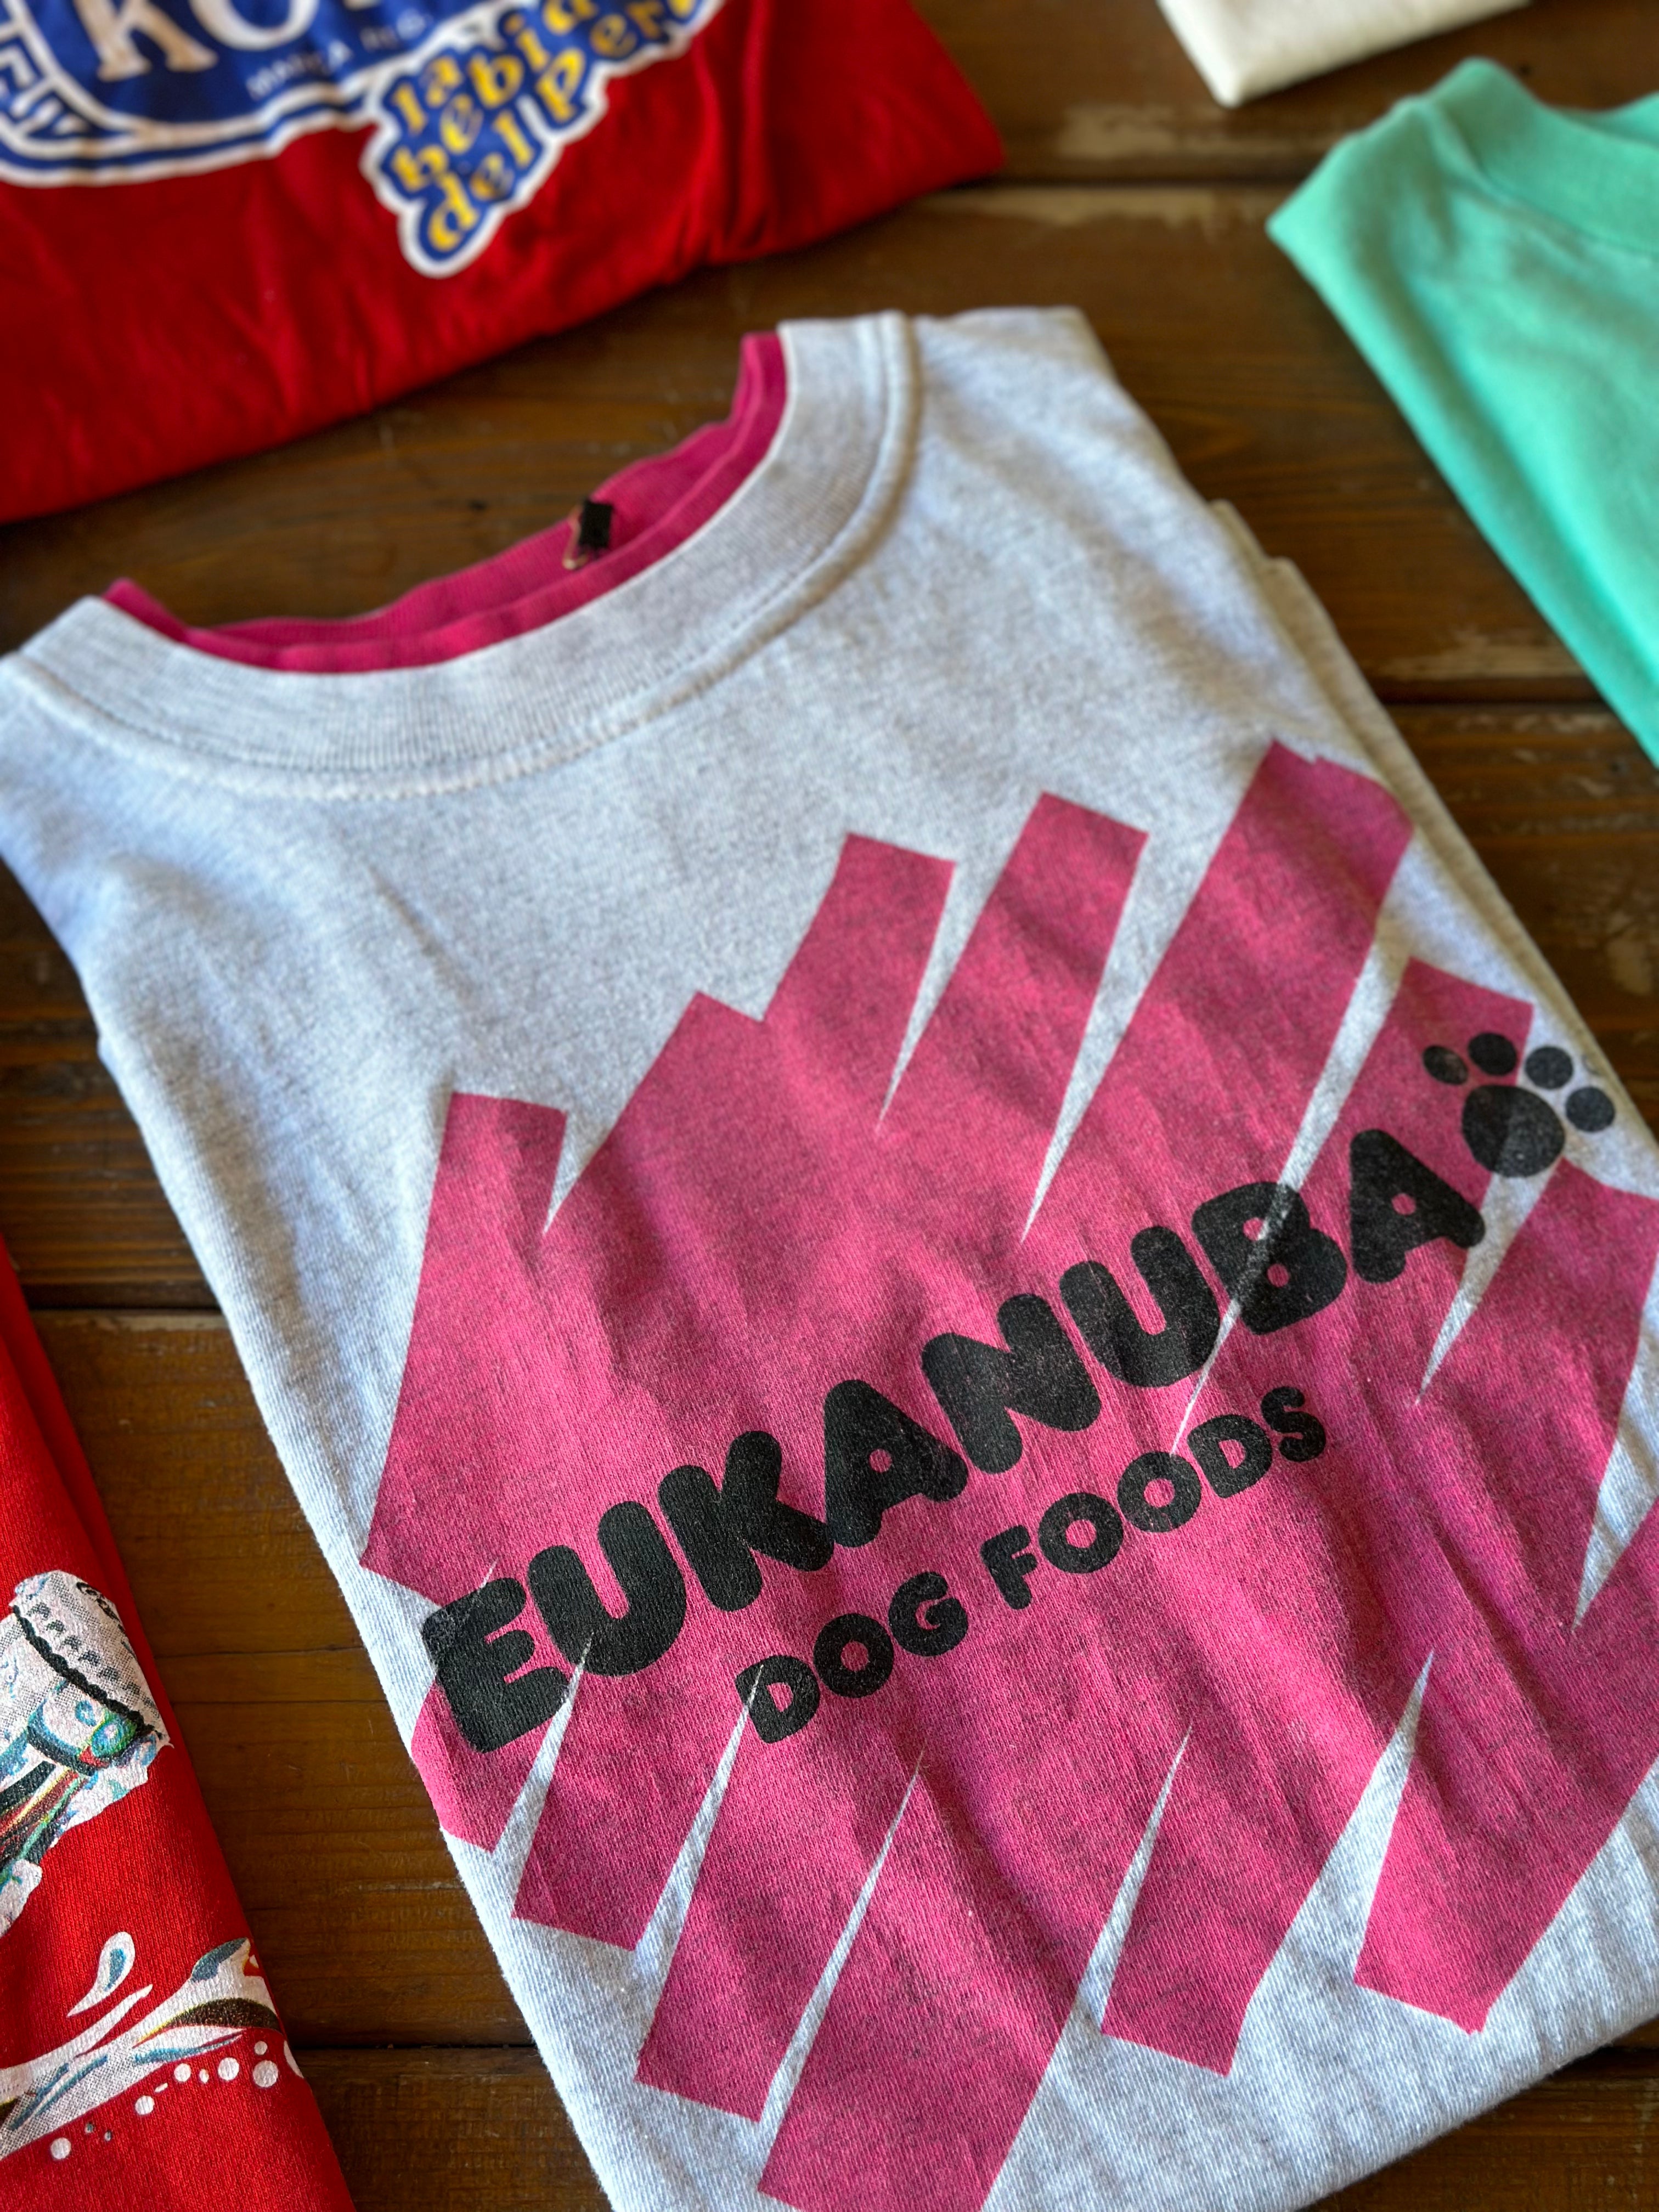 Eukanuba Dog Food XL